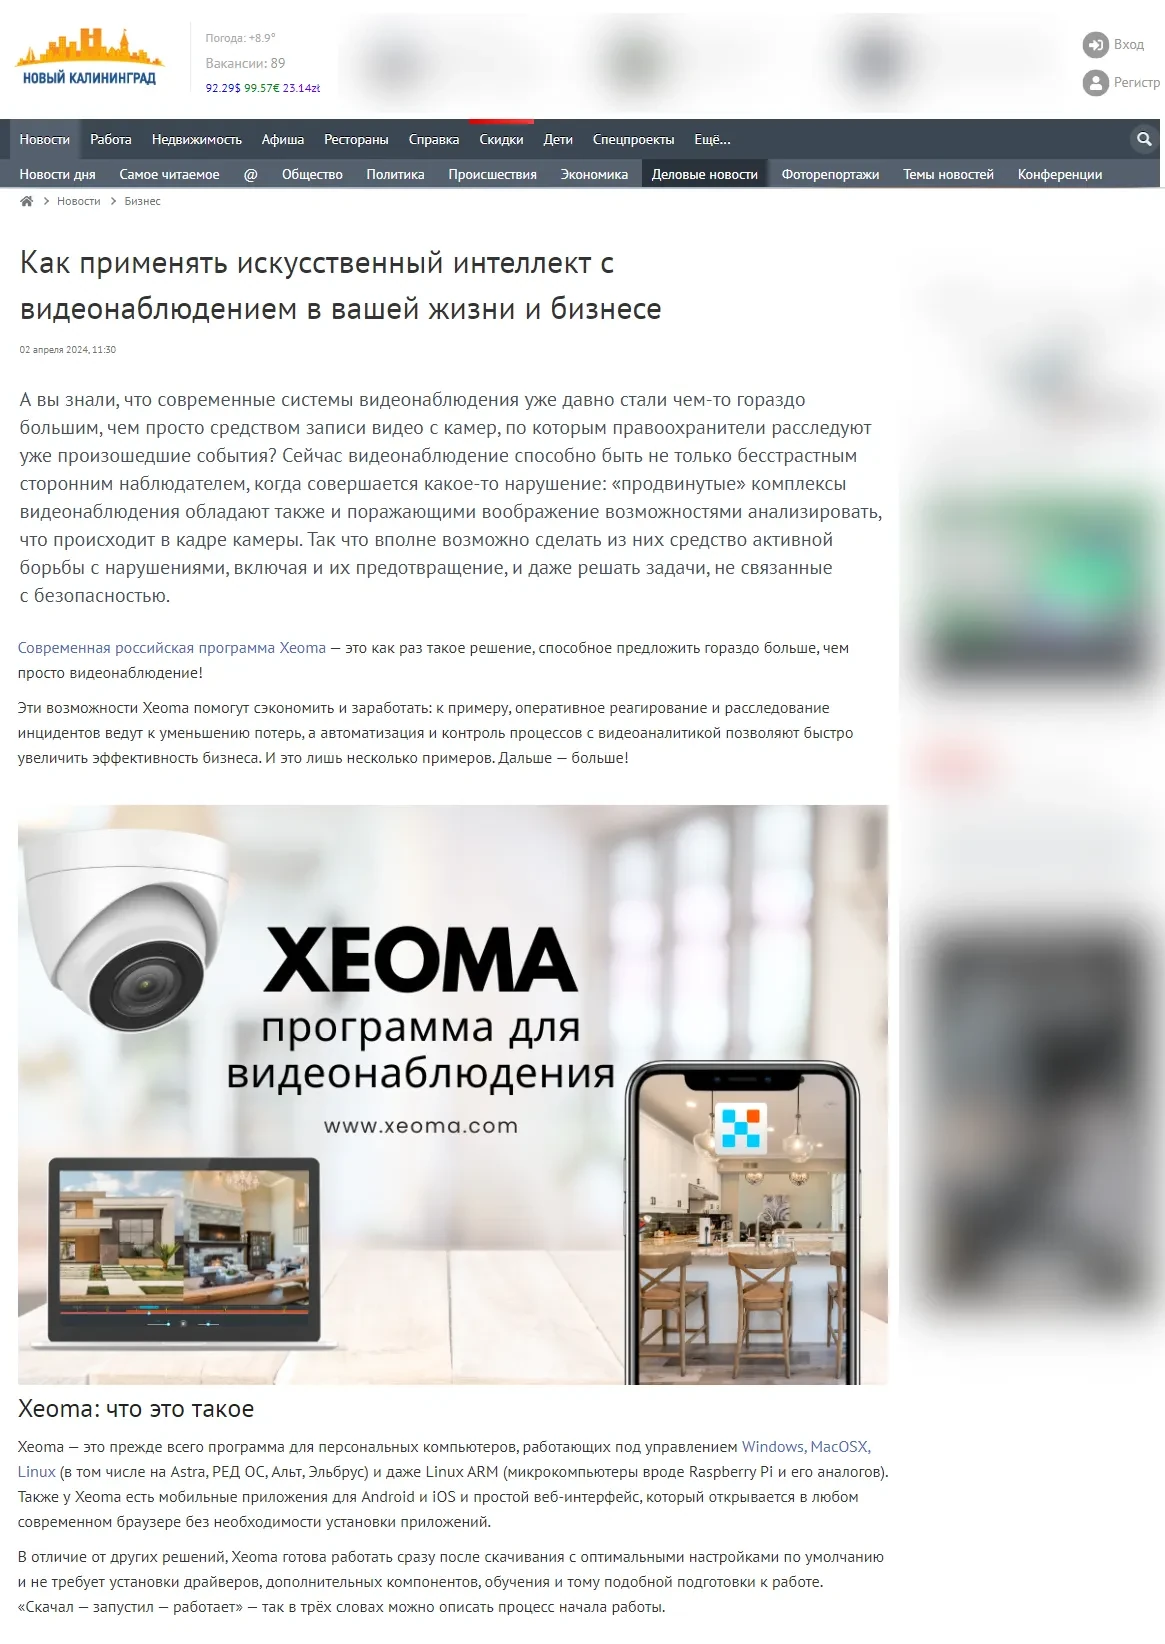 О программе для видеонаблюдения Xeoma в Новом Калининграде. Вступление